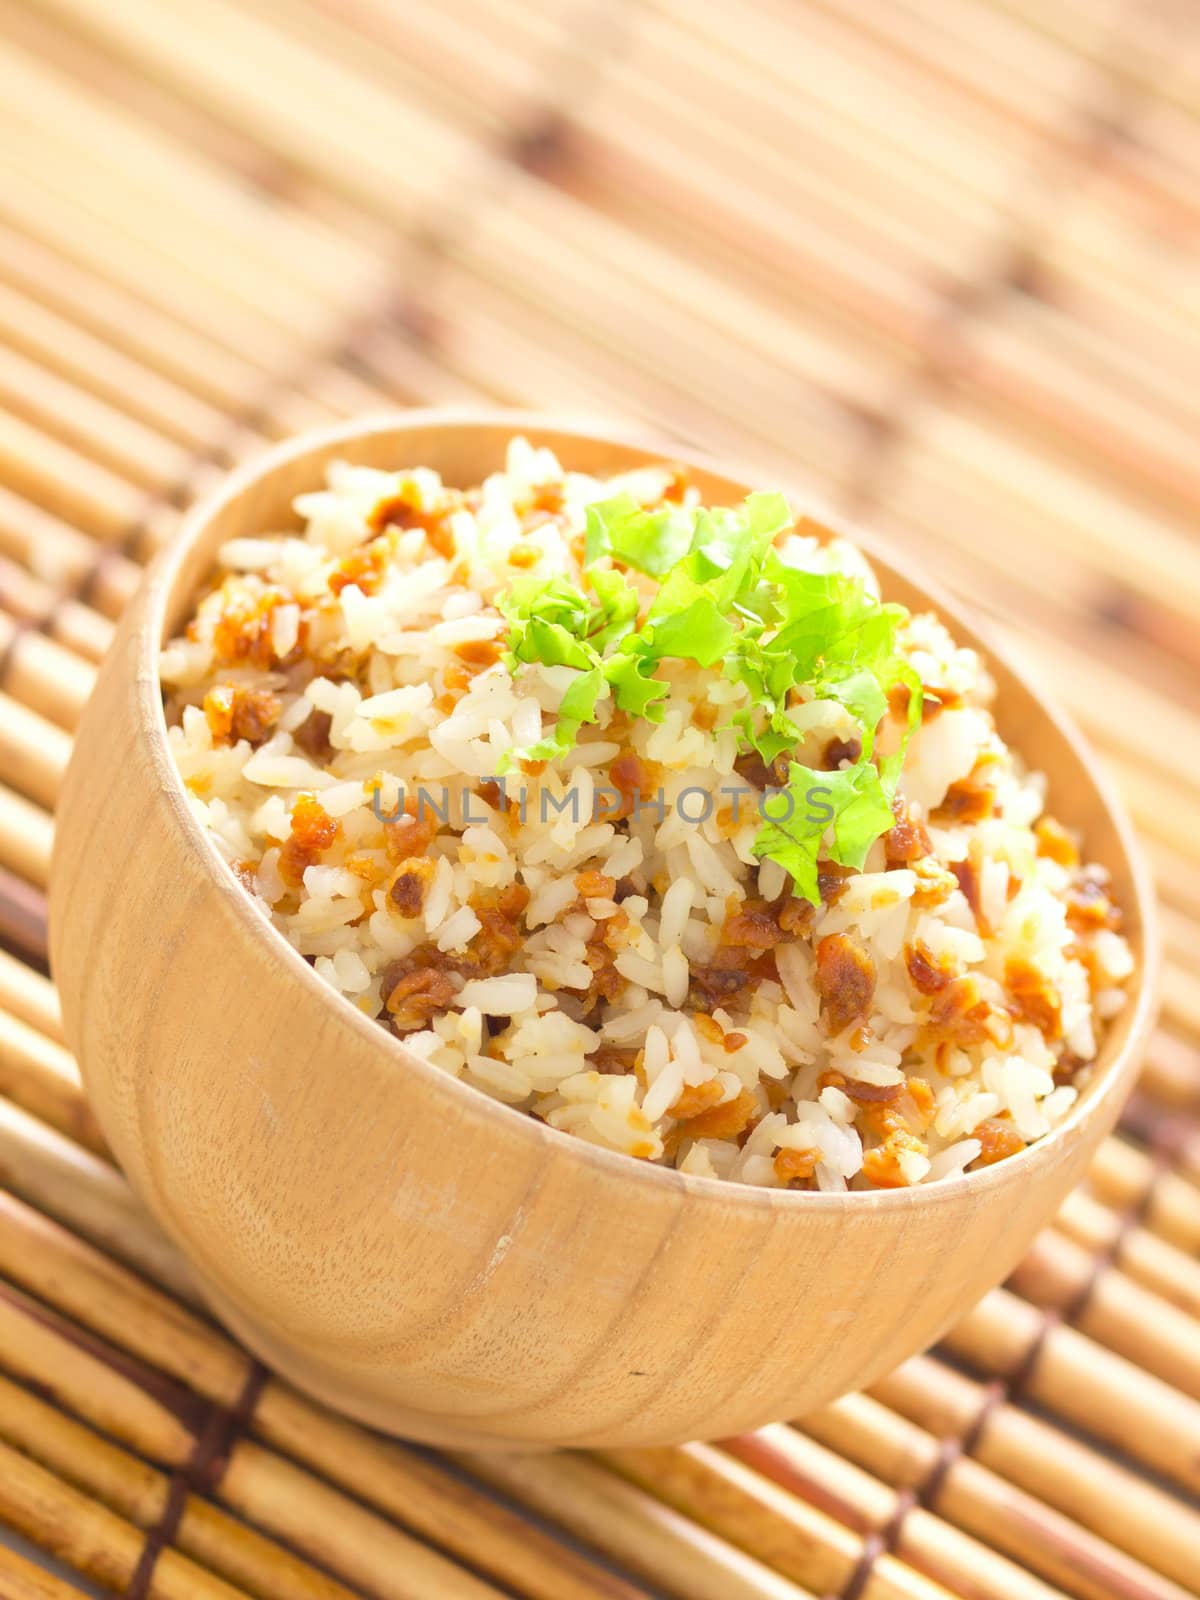 garlic fried rice by zkruger